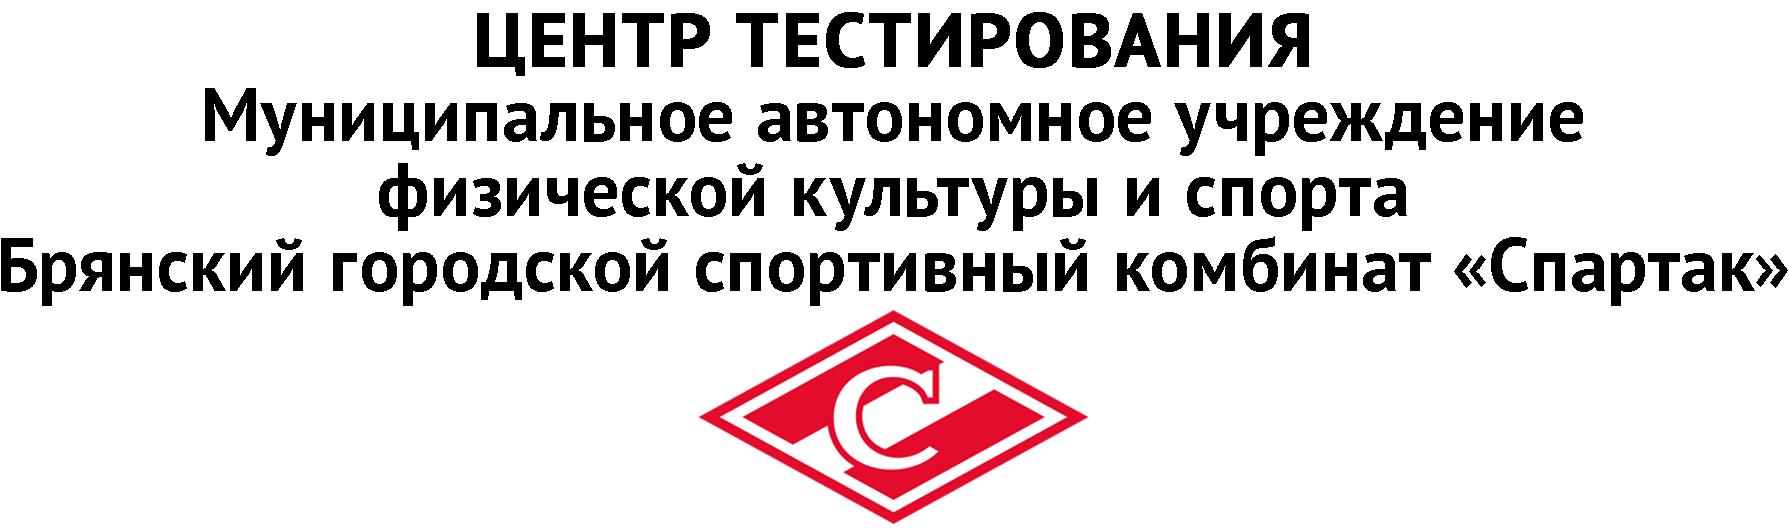 Логотип ГТО